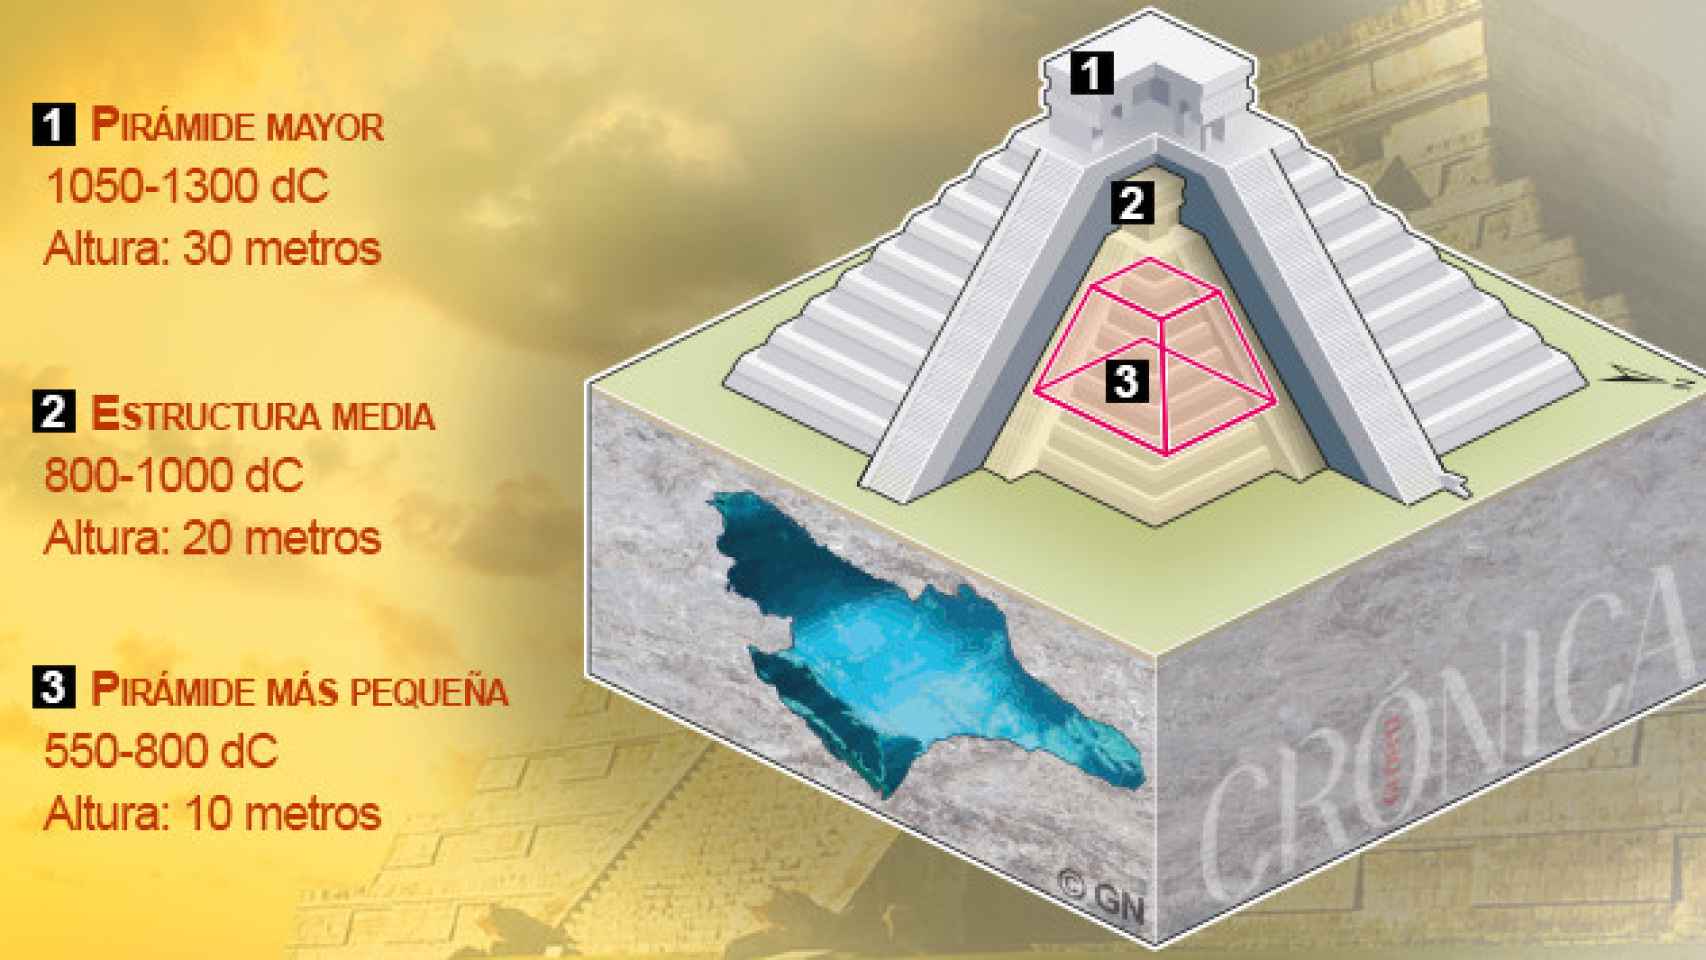 La pirámide de Chichén Itzá, como una matrioska